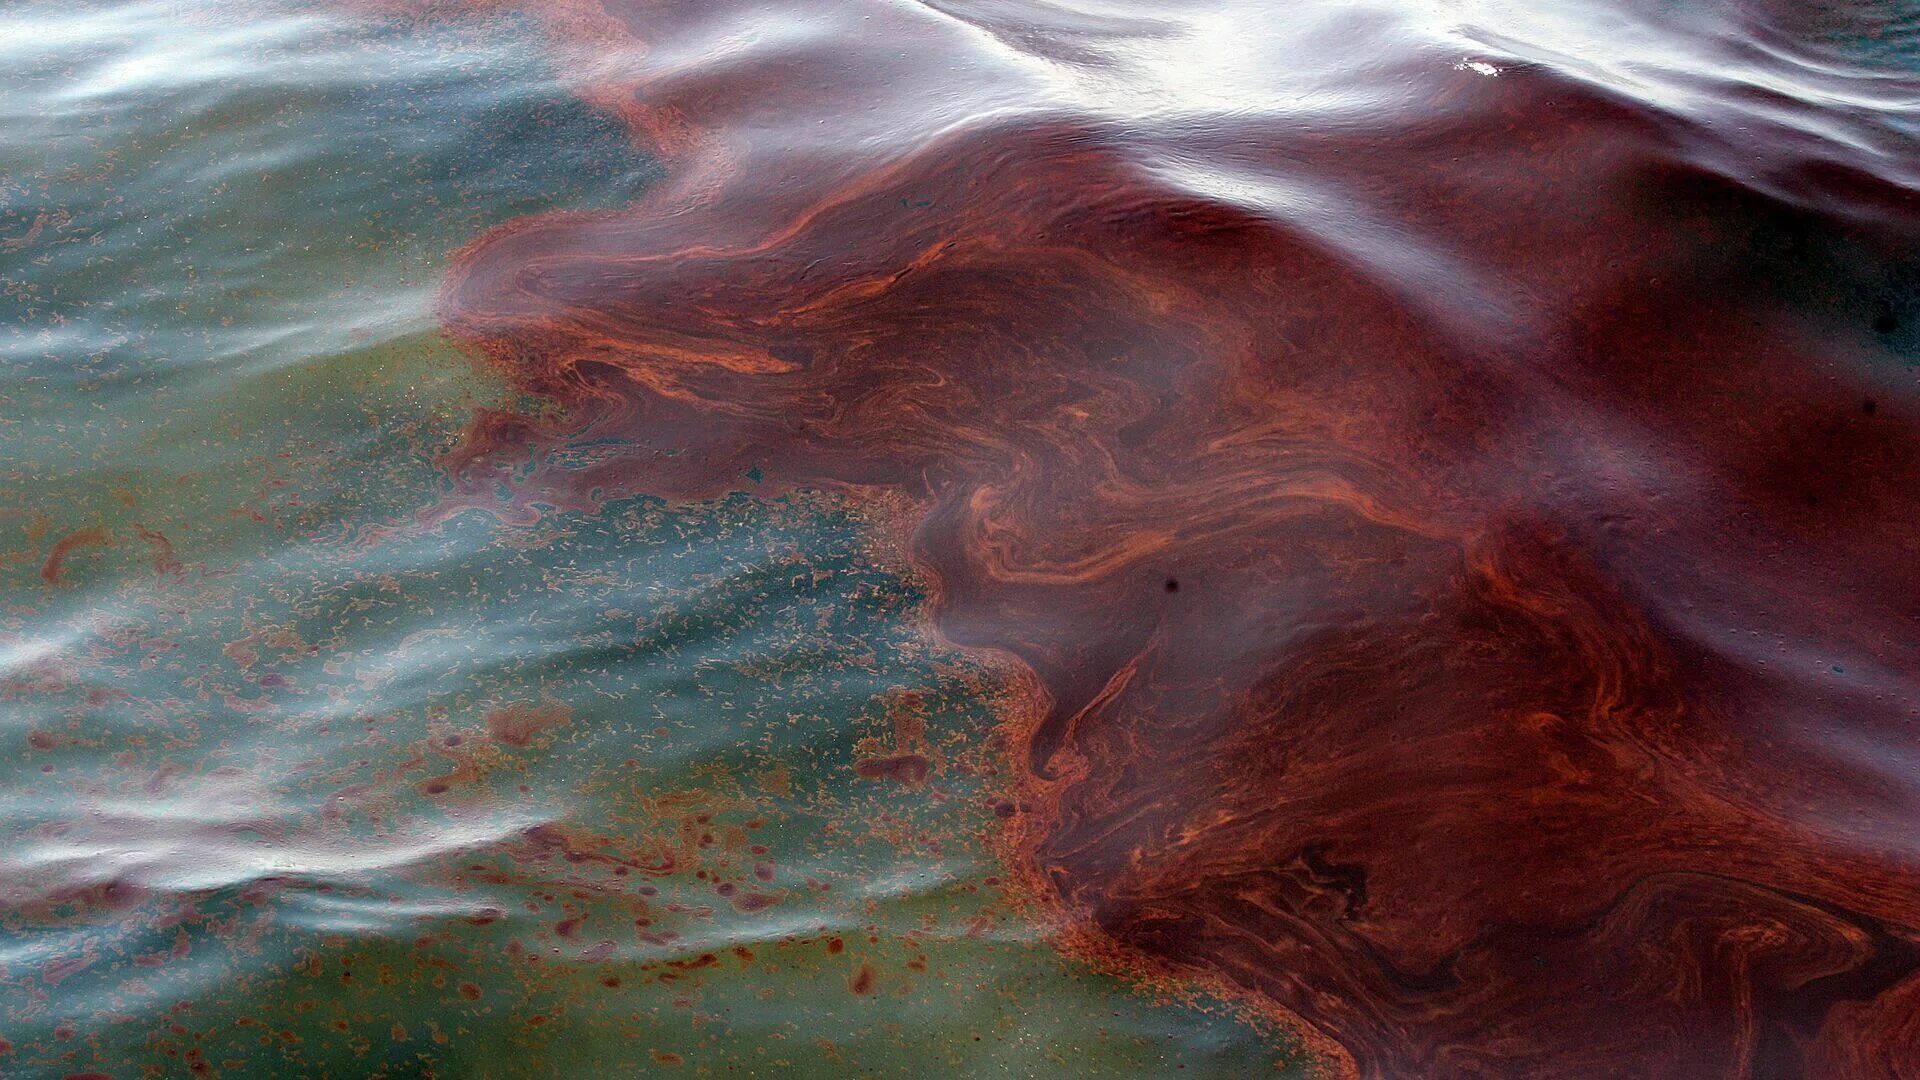 Разлив нефти в Новороссийске 2021 Спутник. Разлив нефти Новороссийск Спутник. Черное море загрязнено нефтепродуктами. Разлив нефти в мексиканском заливе 2020.